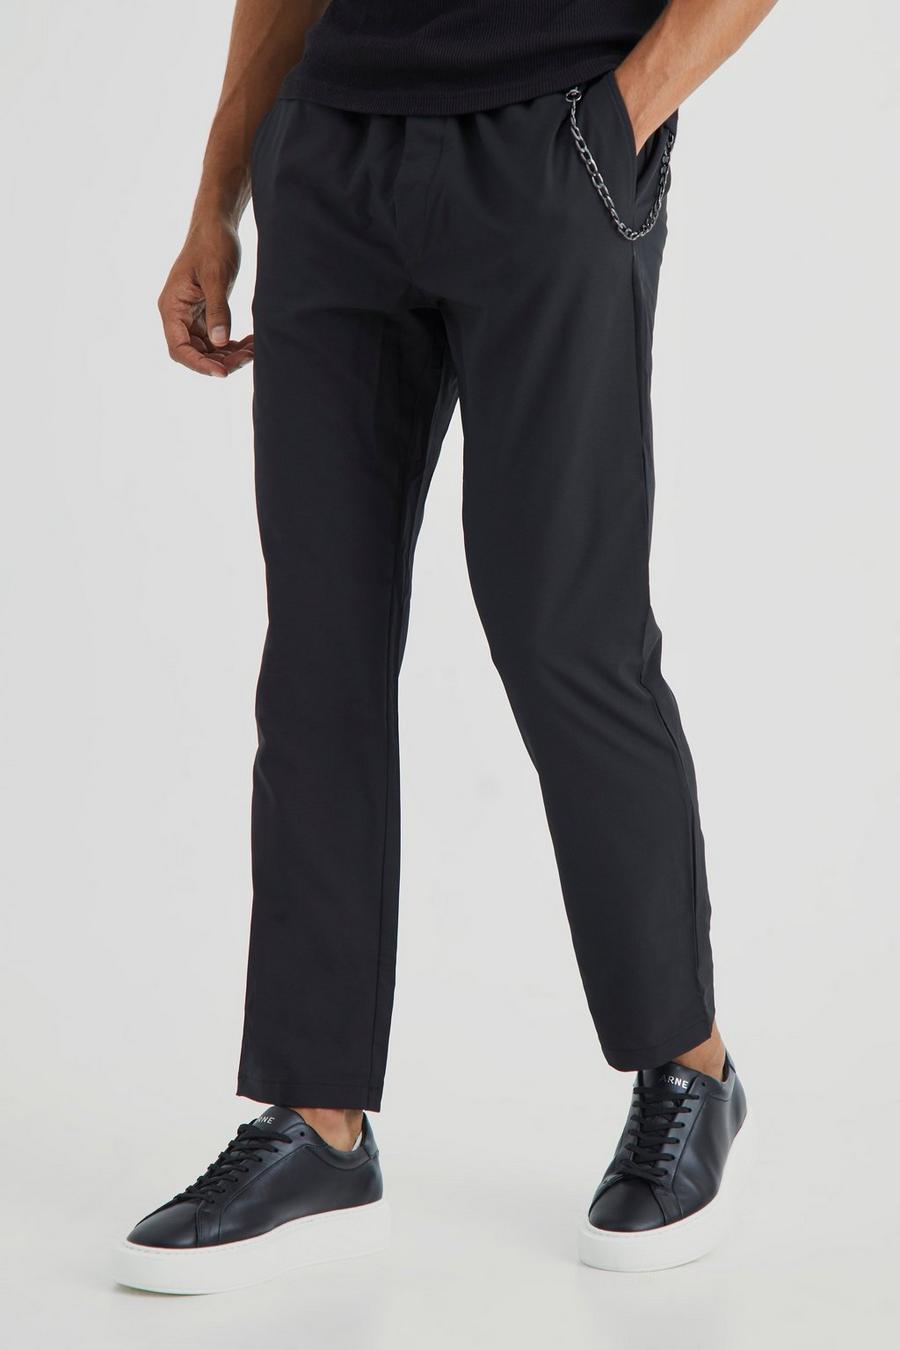 Elastische Slim-Fit Hose mit 4-Way Stretch, Black noir